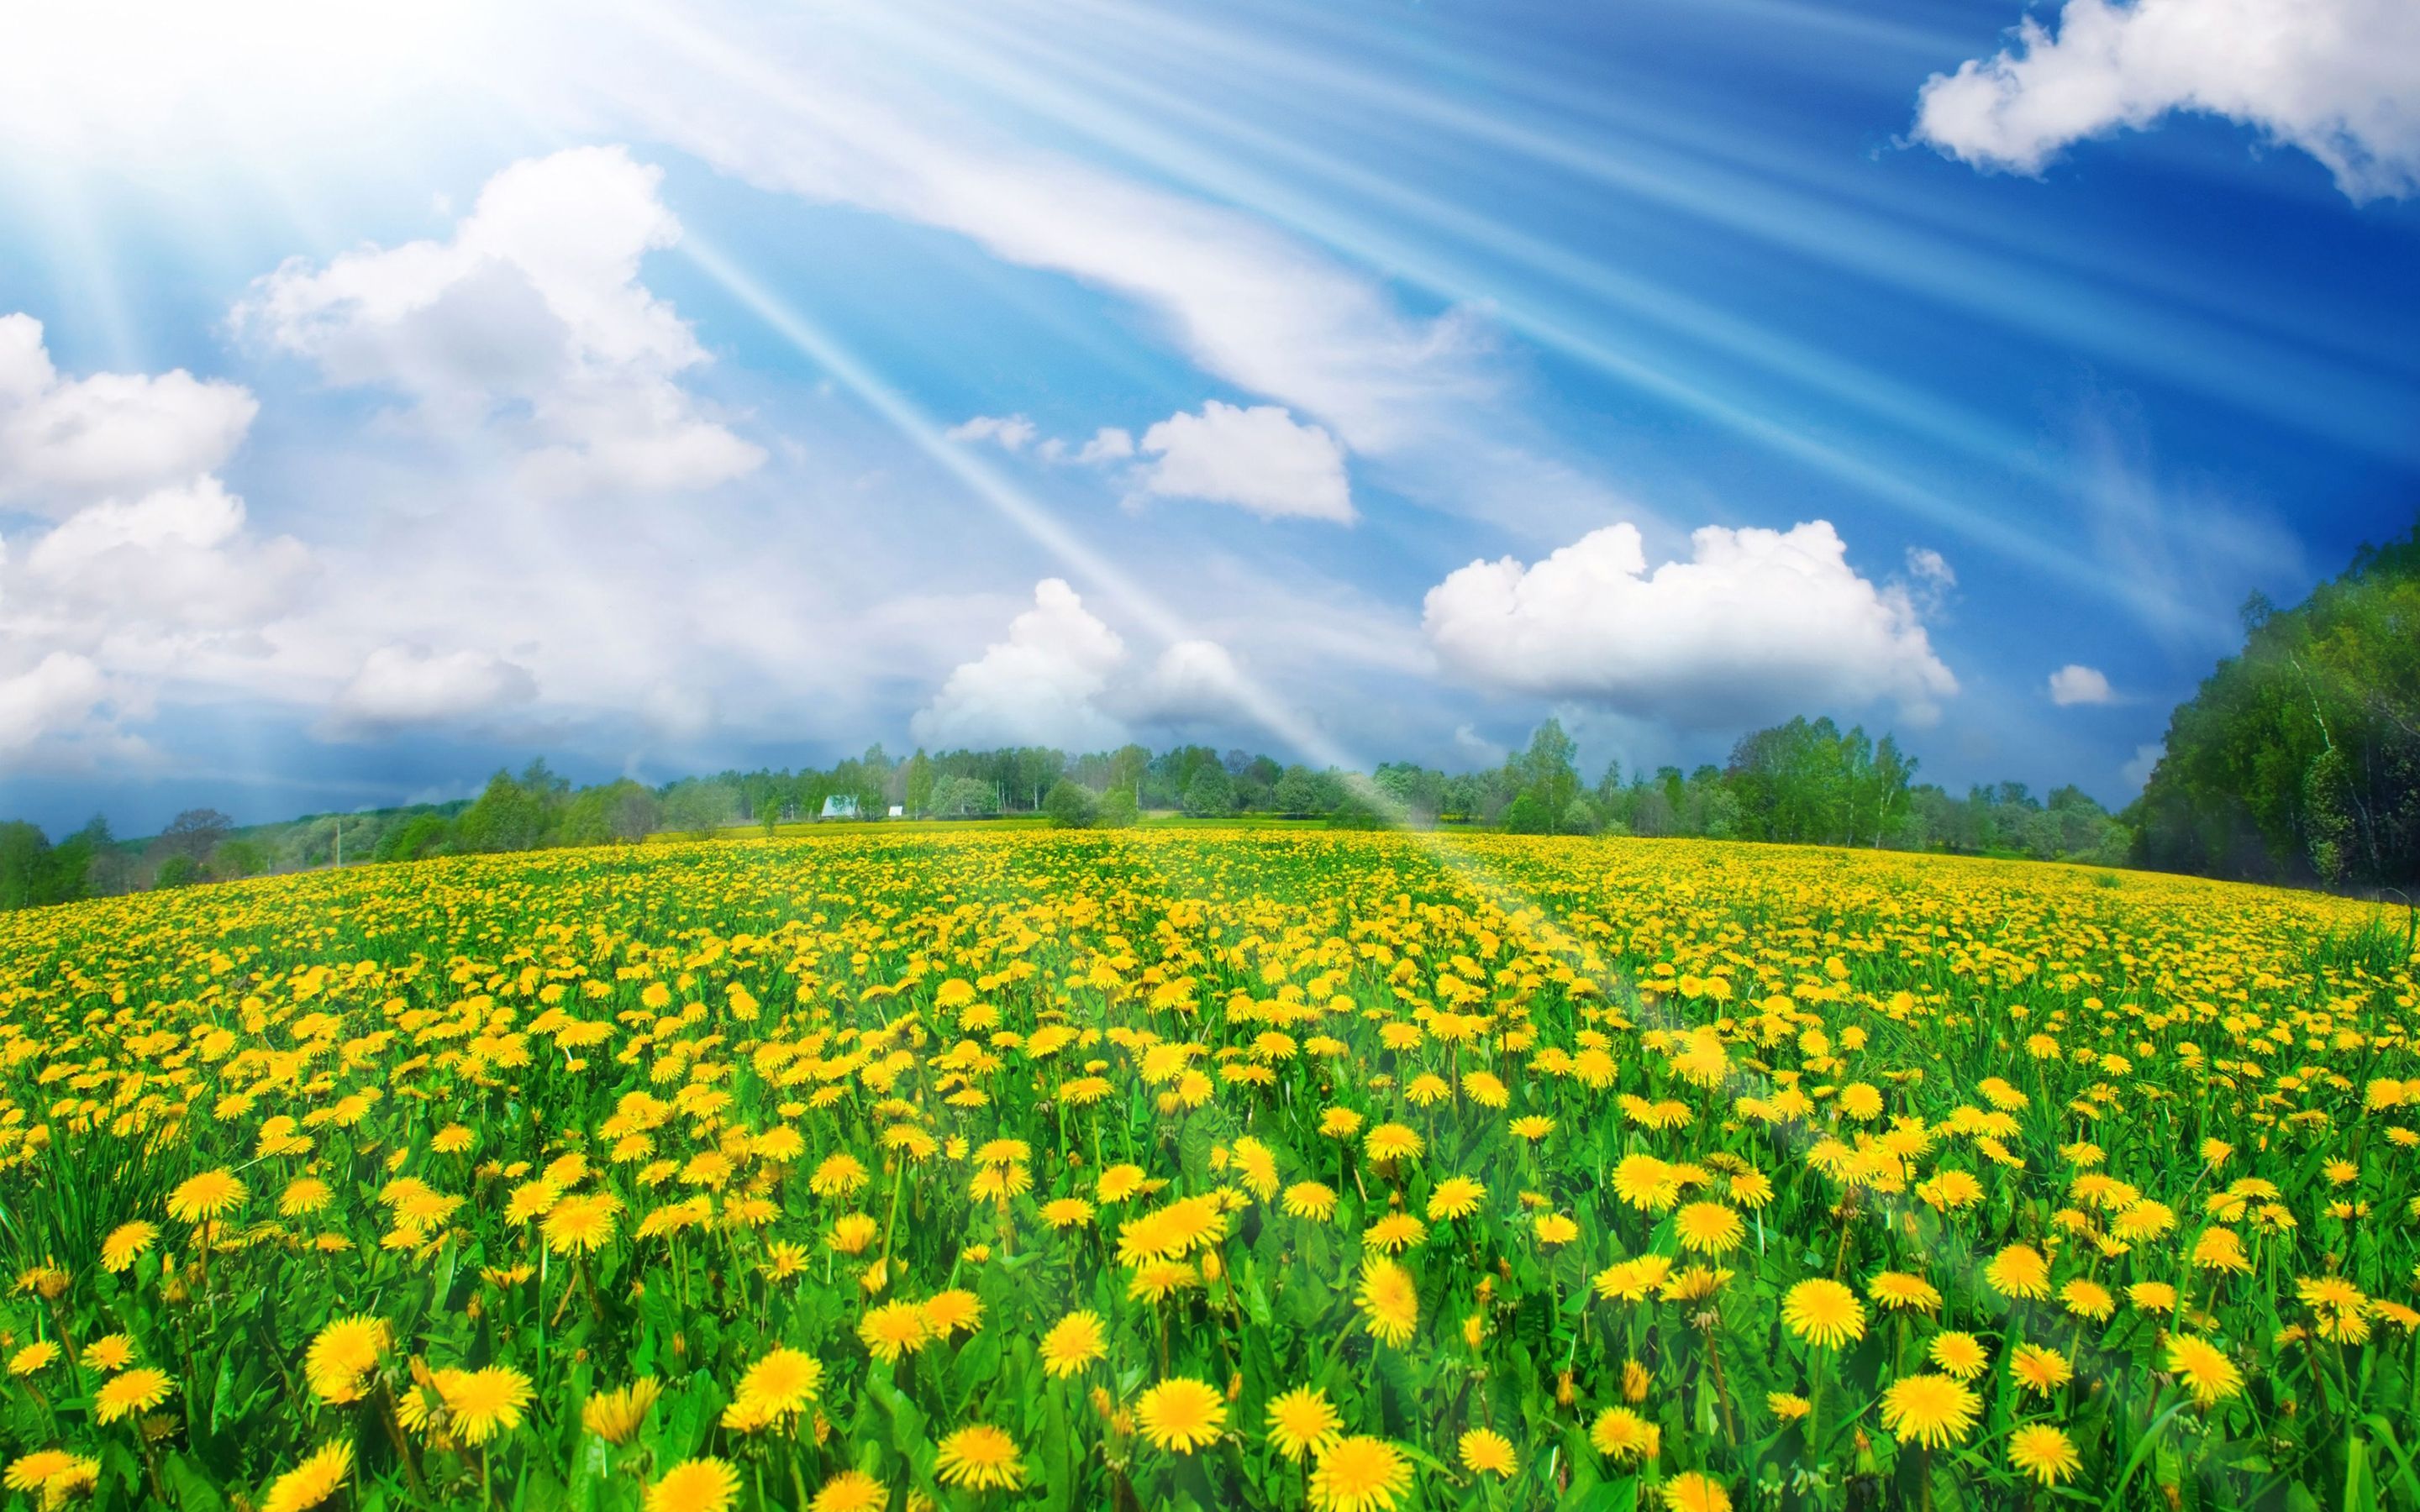 Download mobile wallpaper Earth, Field, Cloud, Dandelion, Sunbeam for free.